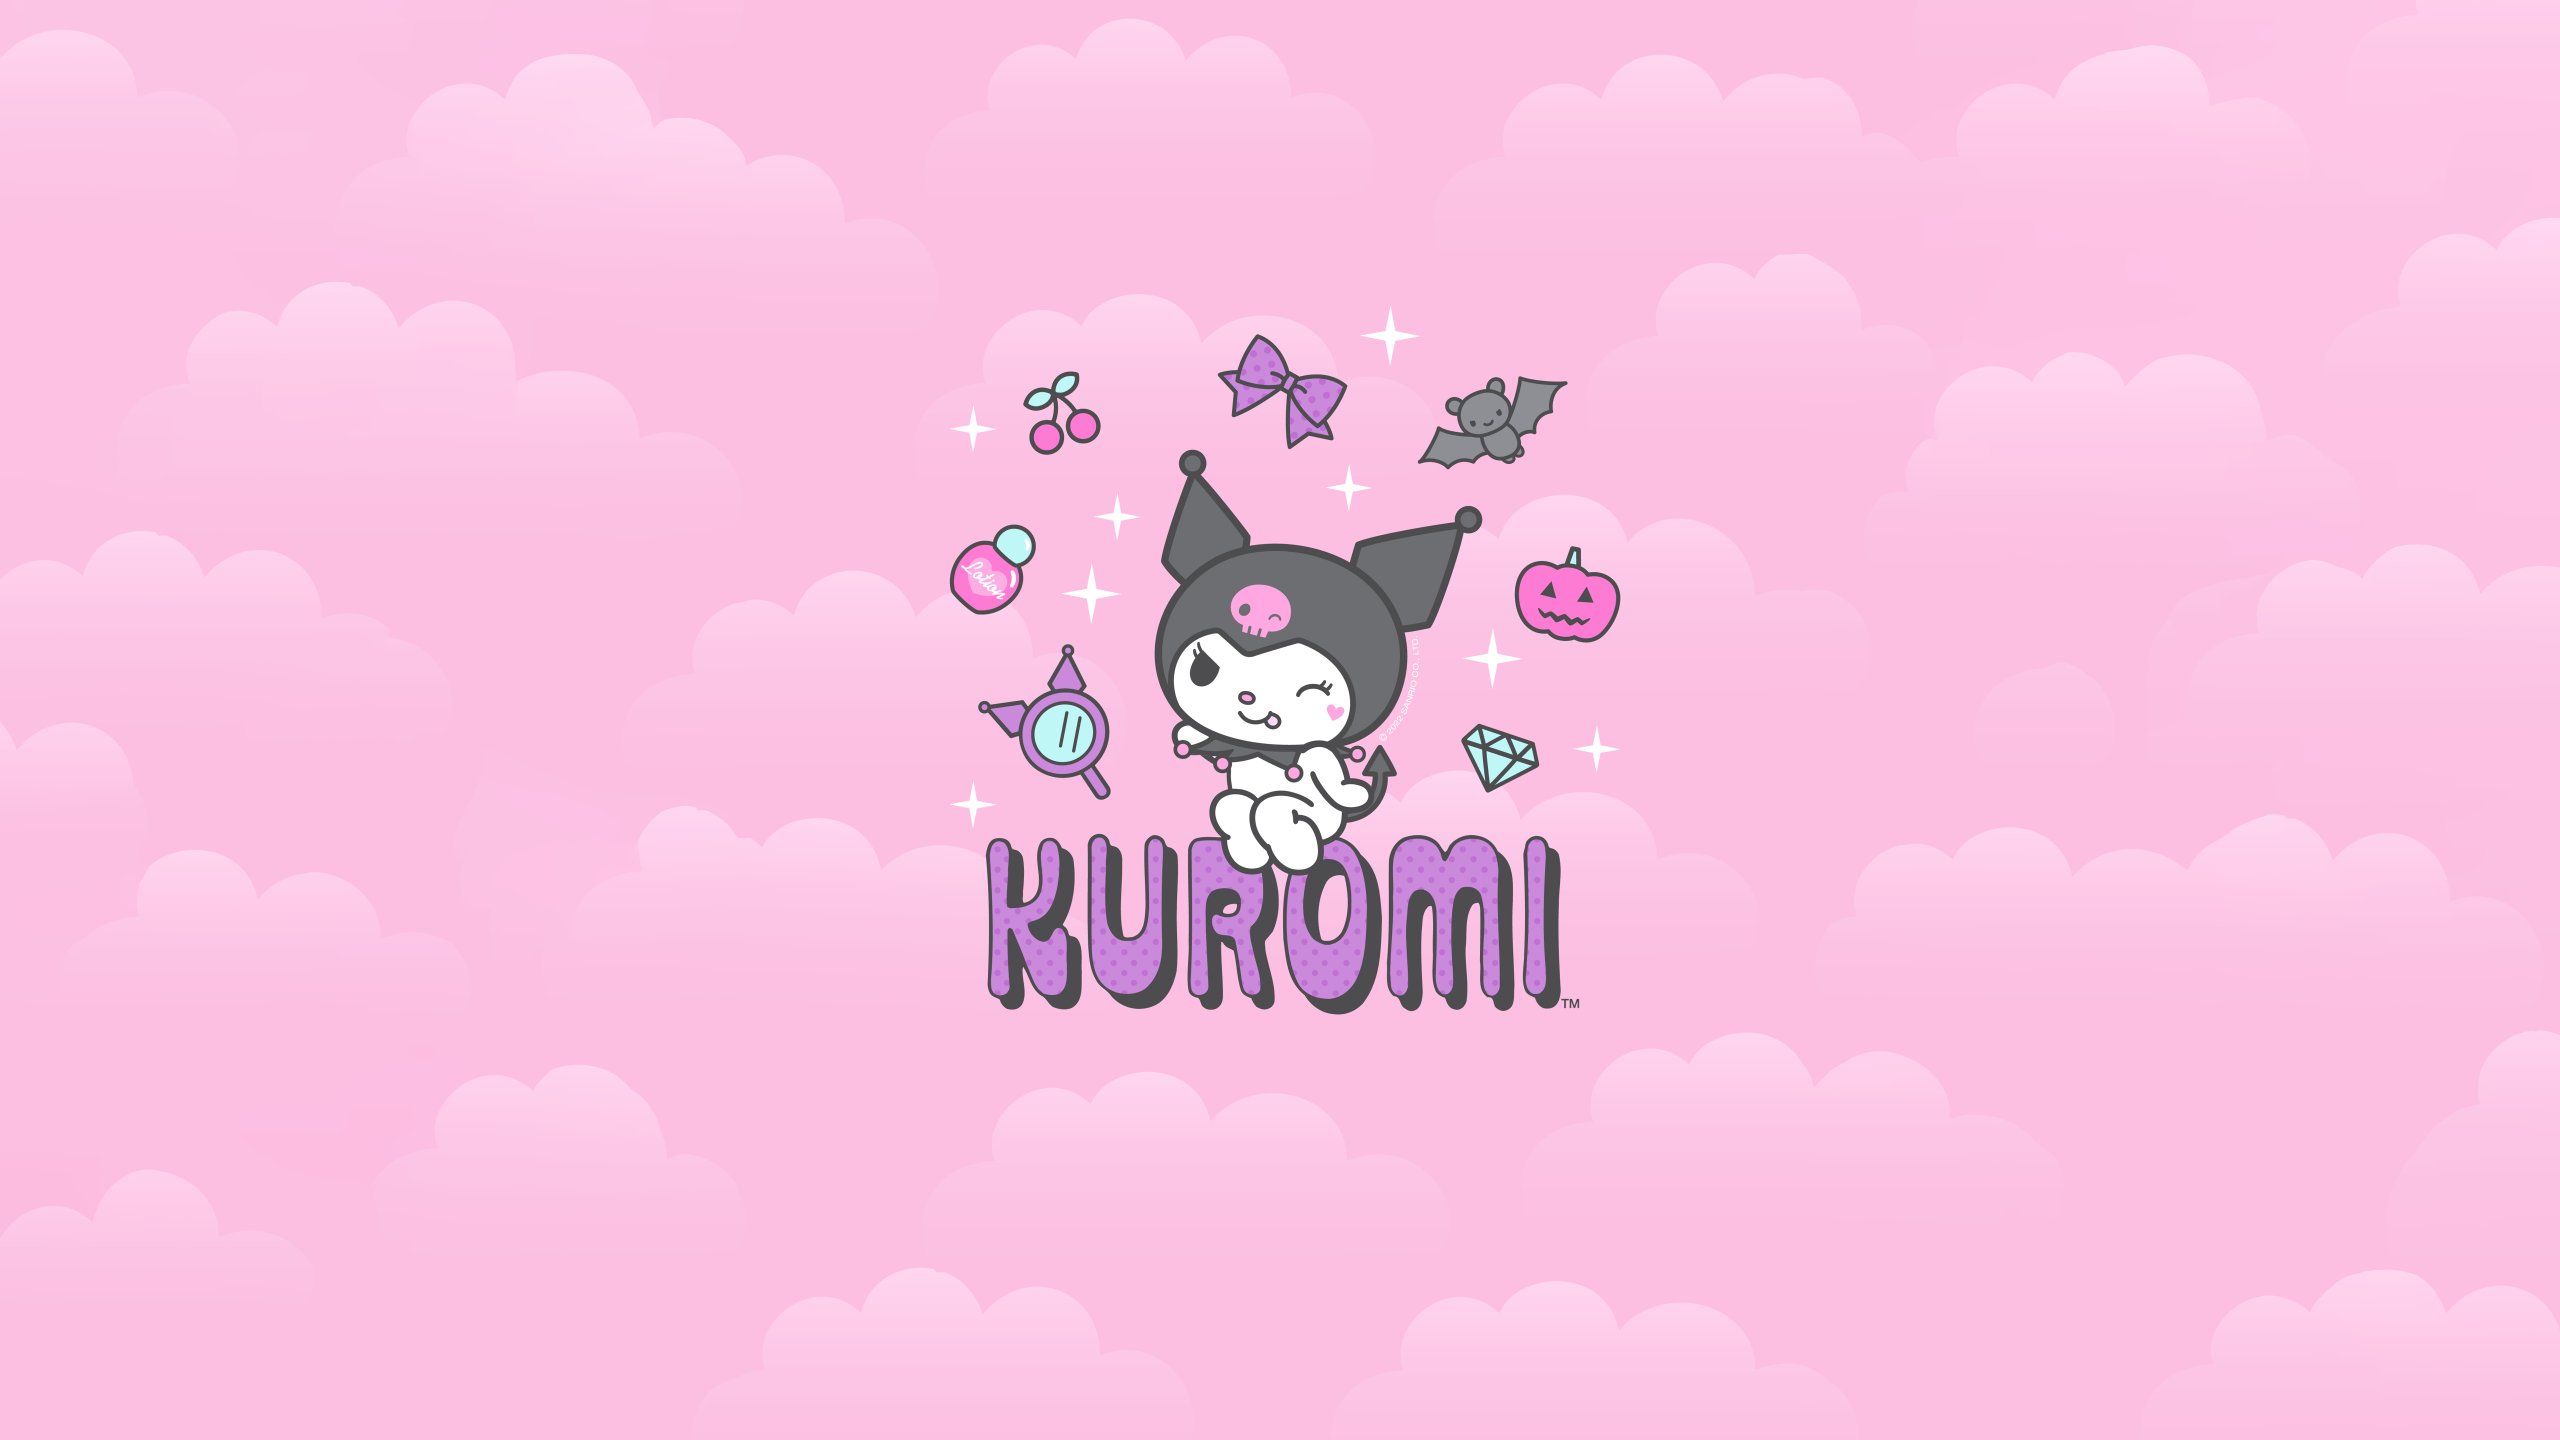 Hãy trang trí màn hình động một cách đáng yêu với hình nền Kuromi đầy màu sắc. Hình ảnh này thật đặc biệt và phù hợp với những ai yêu thích động vật nhỏ xinh như Kuromi.